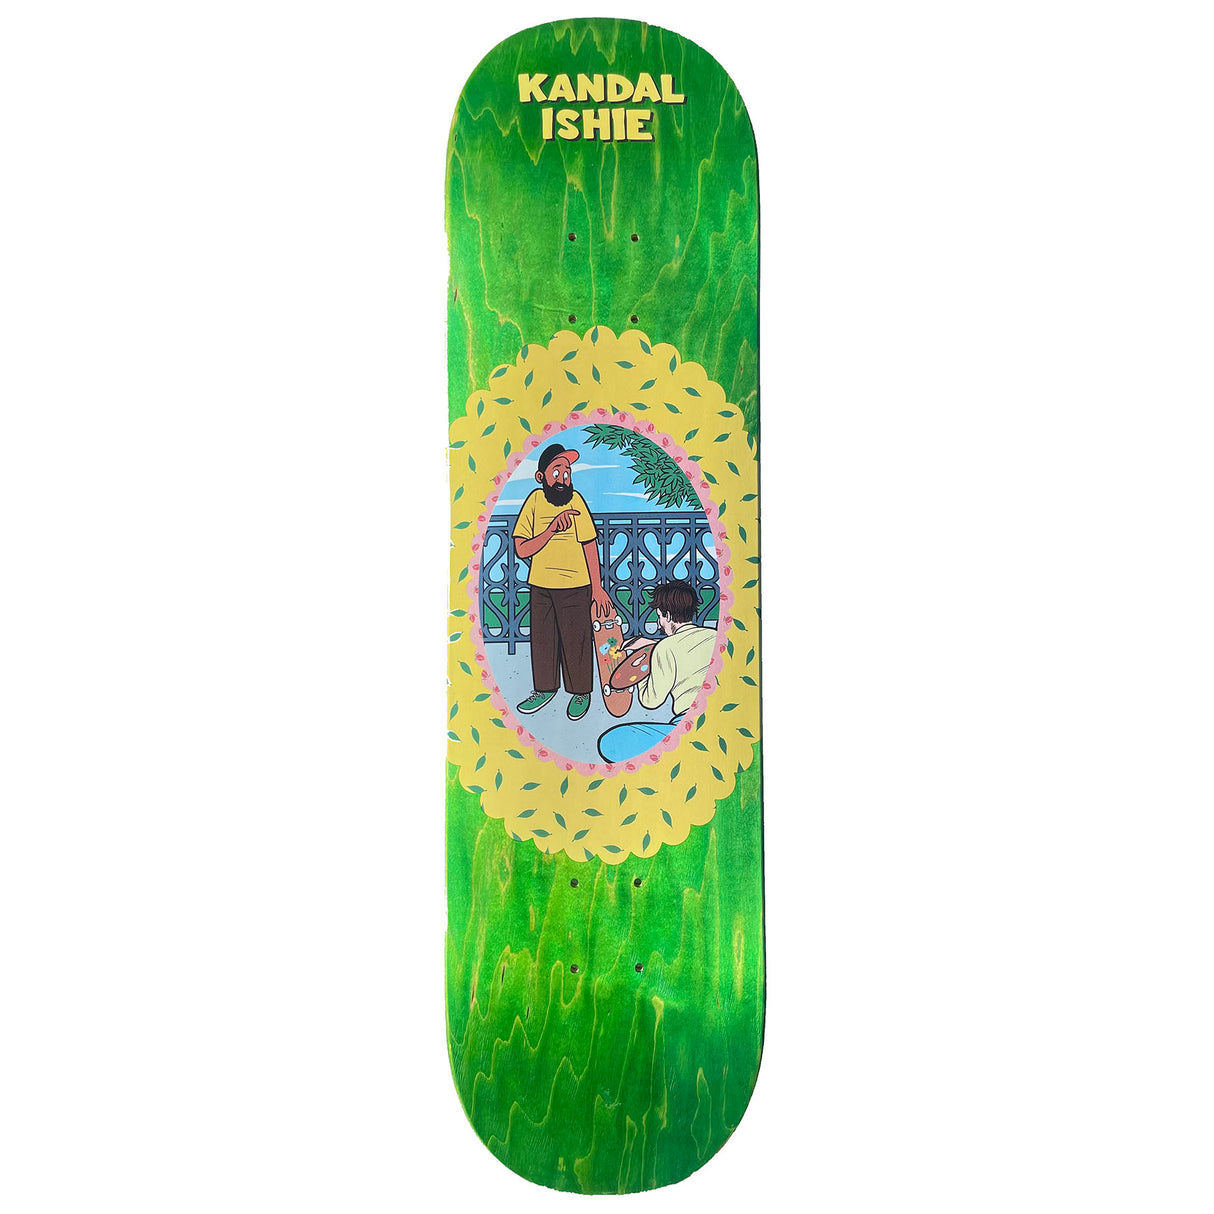 Kandal Ishie x Van Eggers Paint My Deck 8.25" Skateboard Deck